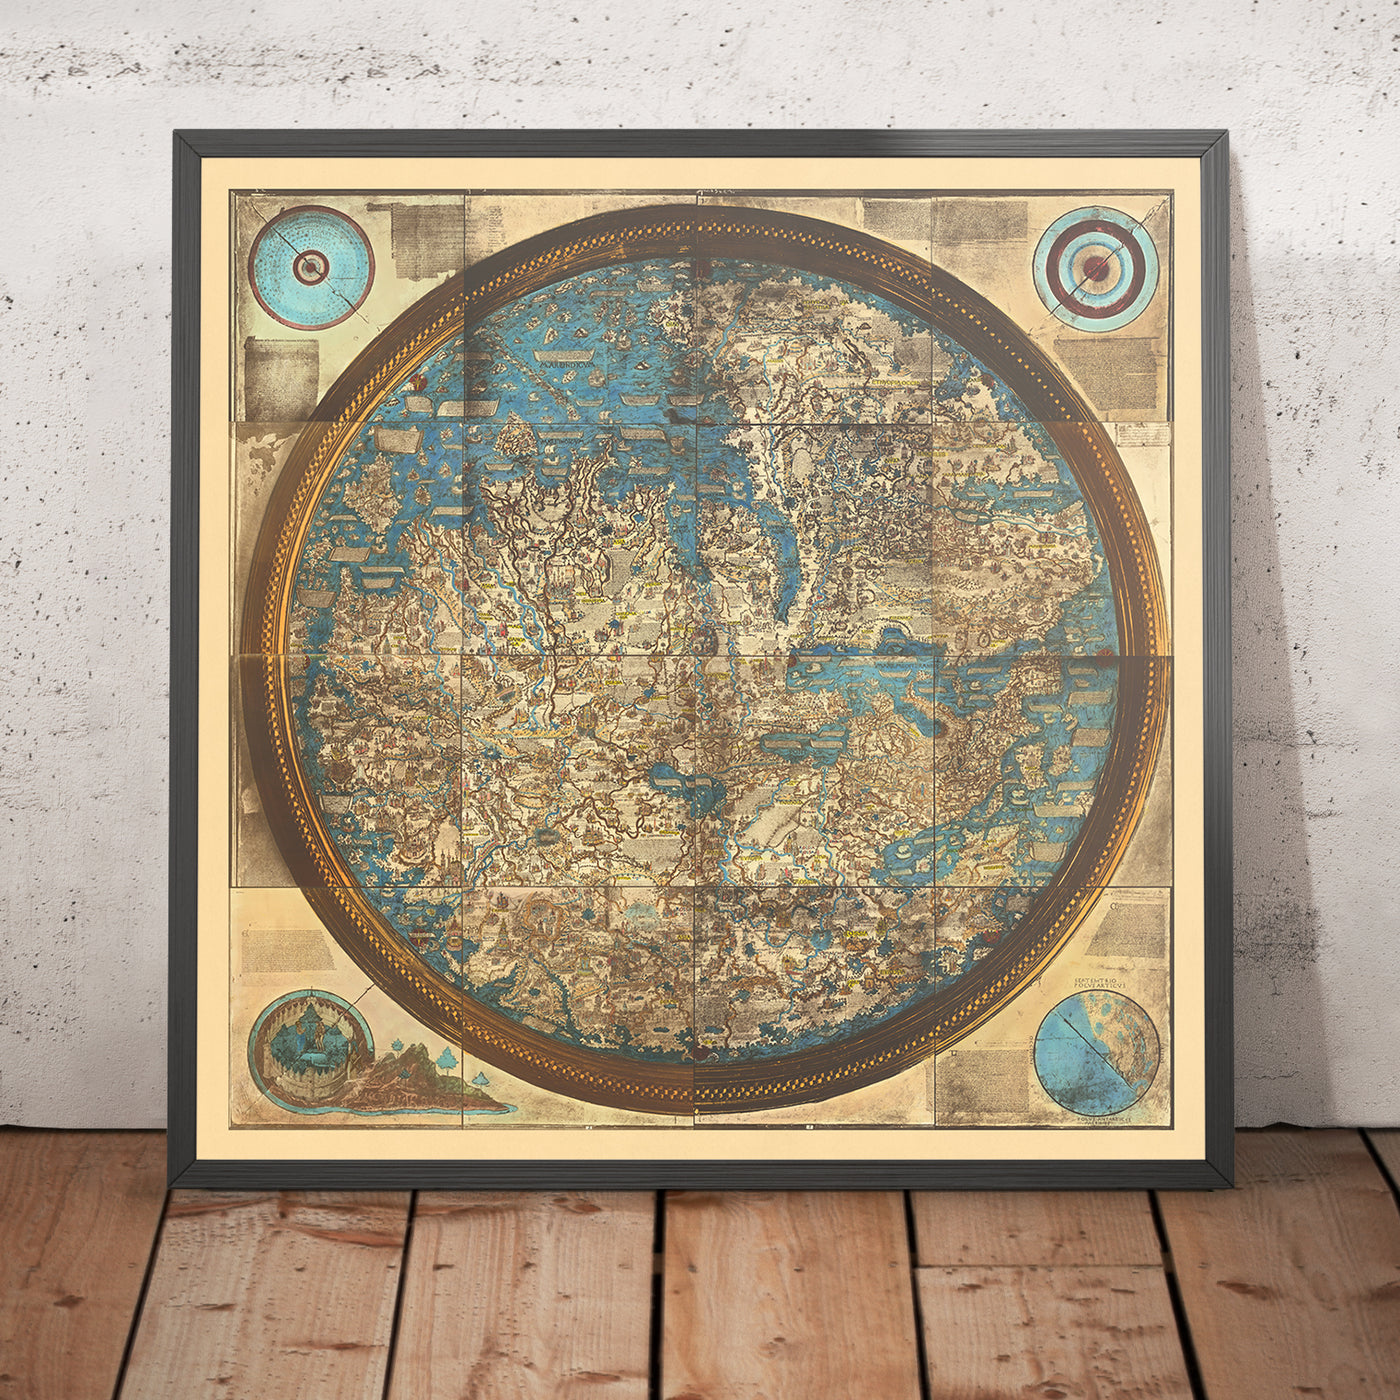 Mapa del Viejo Mundo del Mundo por Fra Mauro, 1450: Reproducción impresa, Proyección geocéntrica, Mappa Mundi medieval